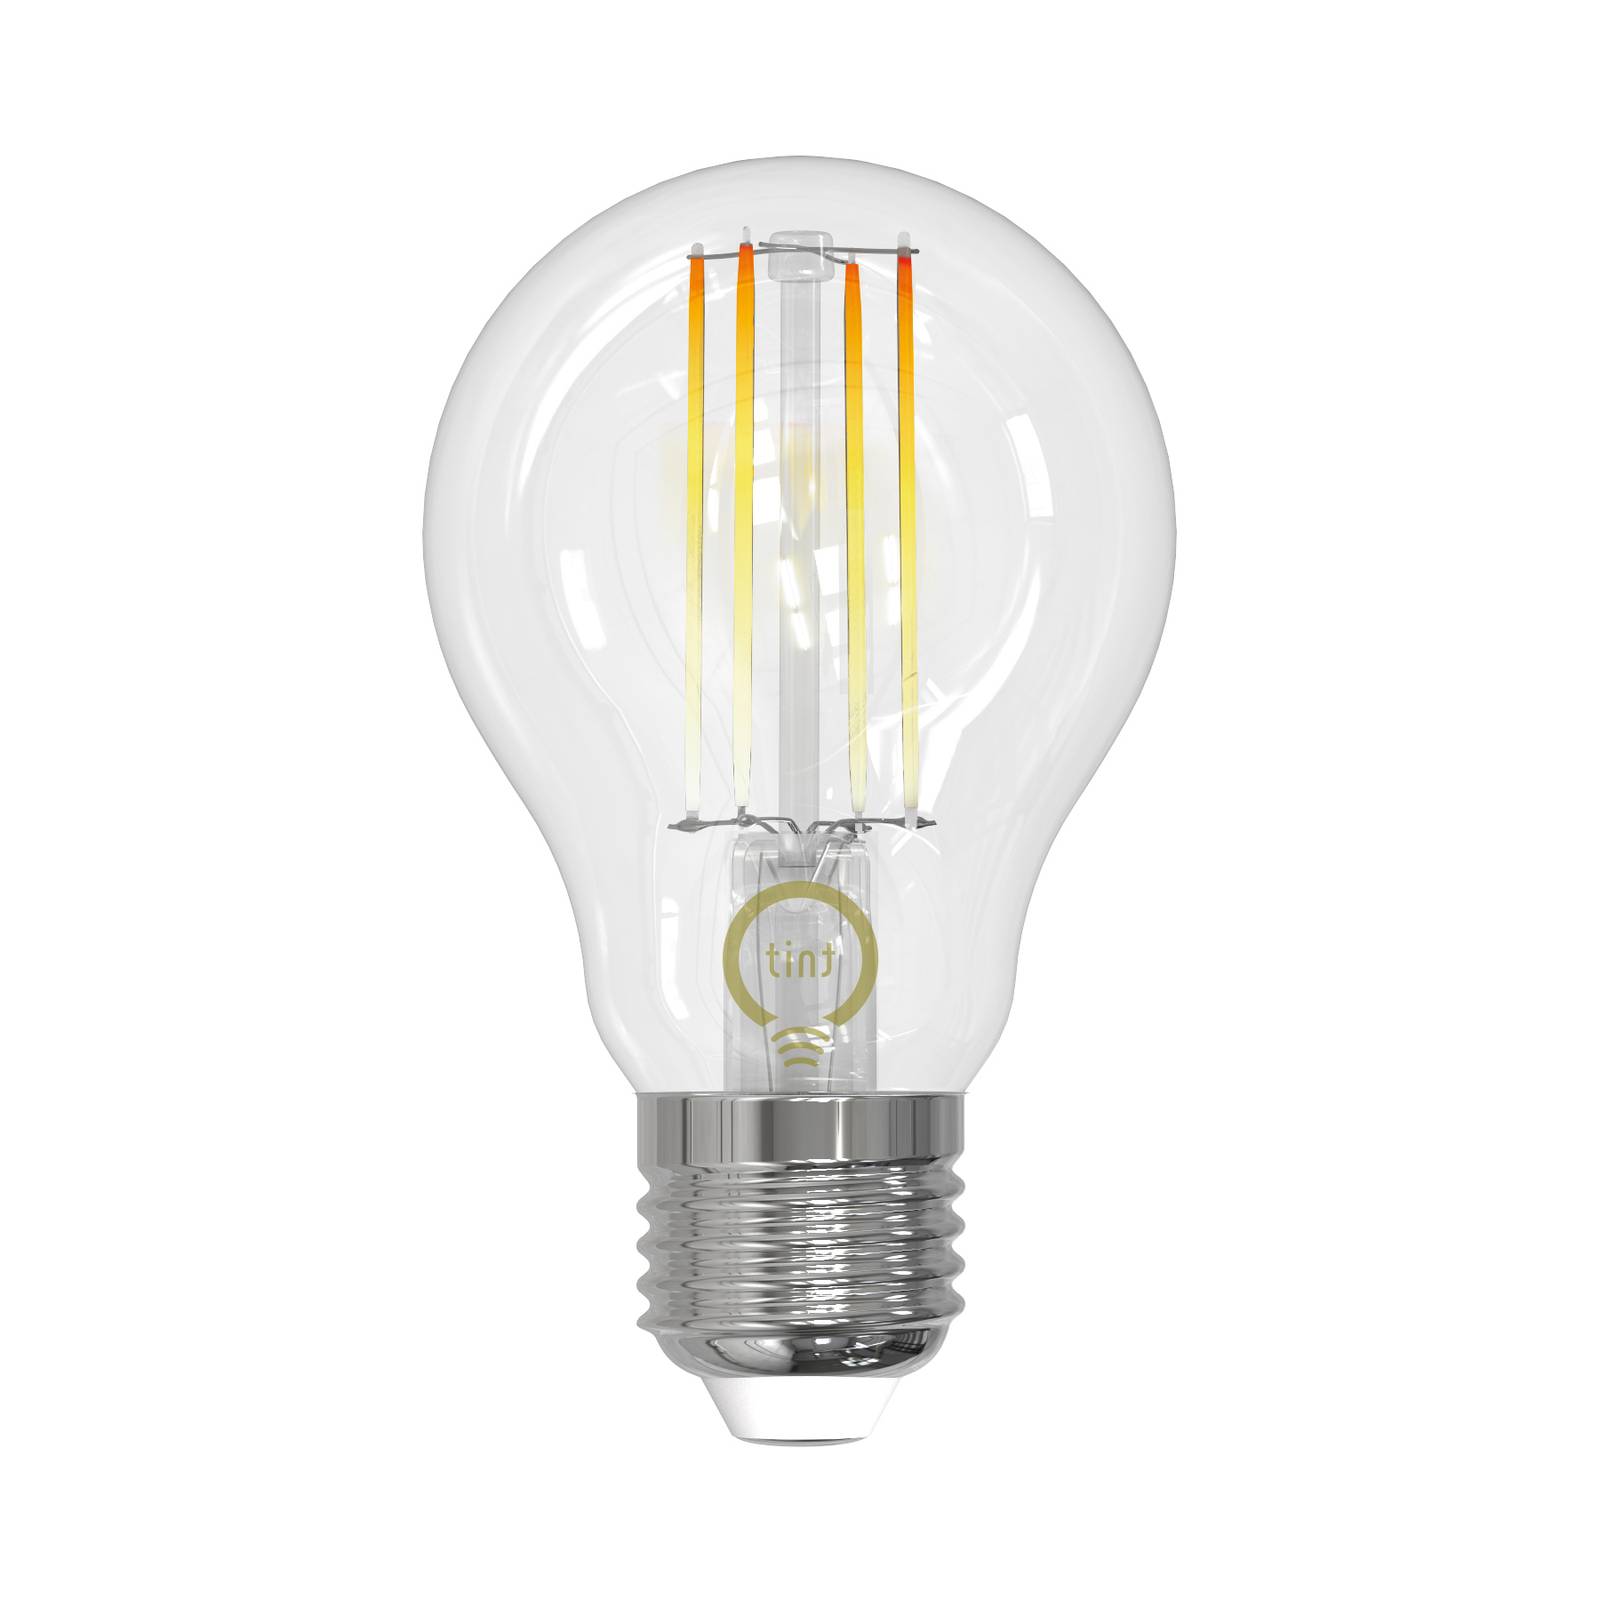 Müller Licht tint LED-Filamentlampe E27 7W CCT